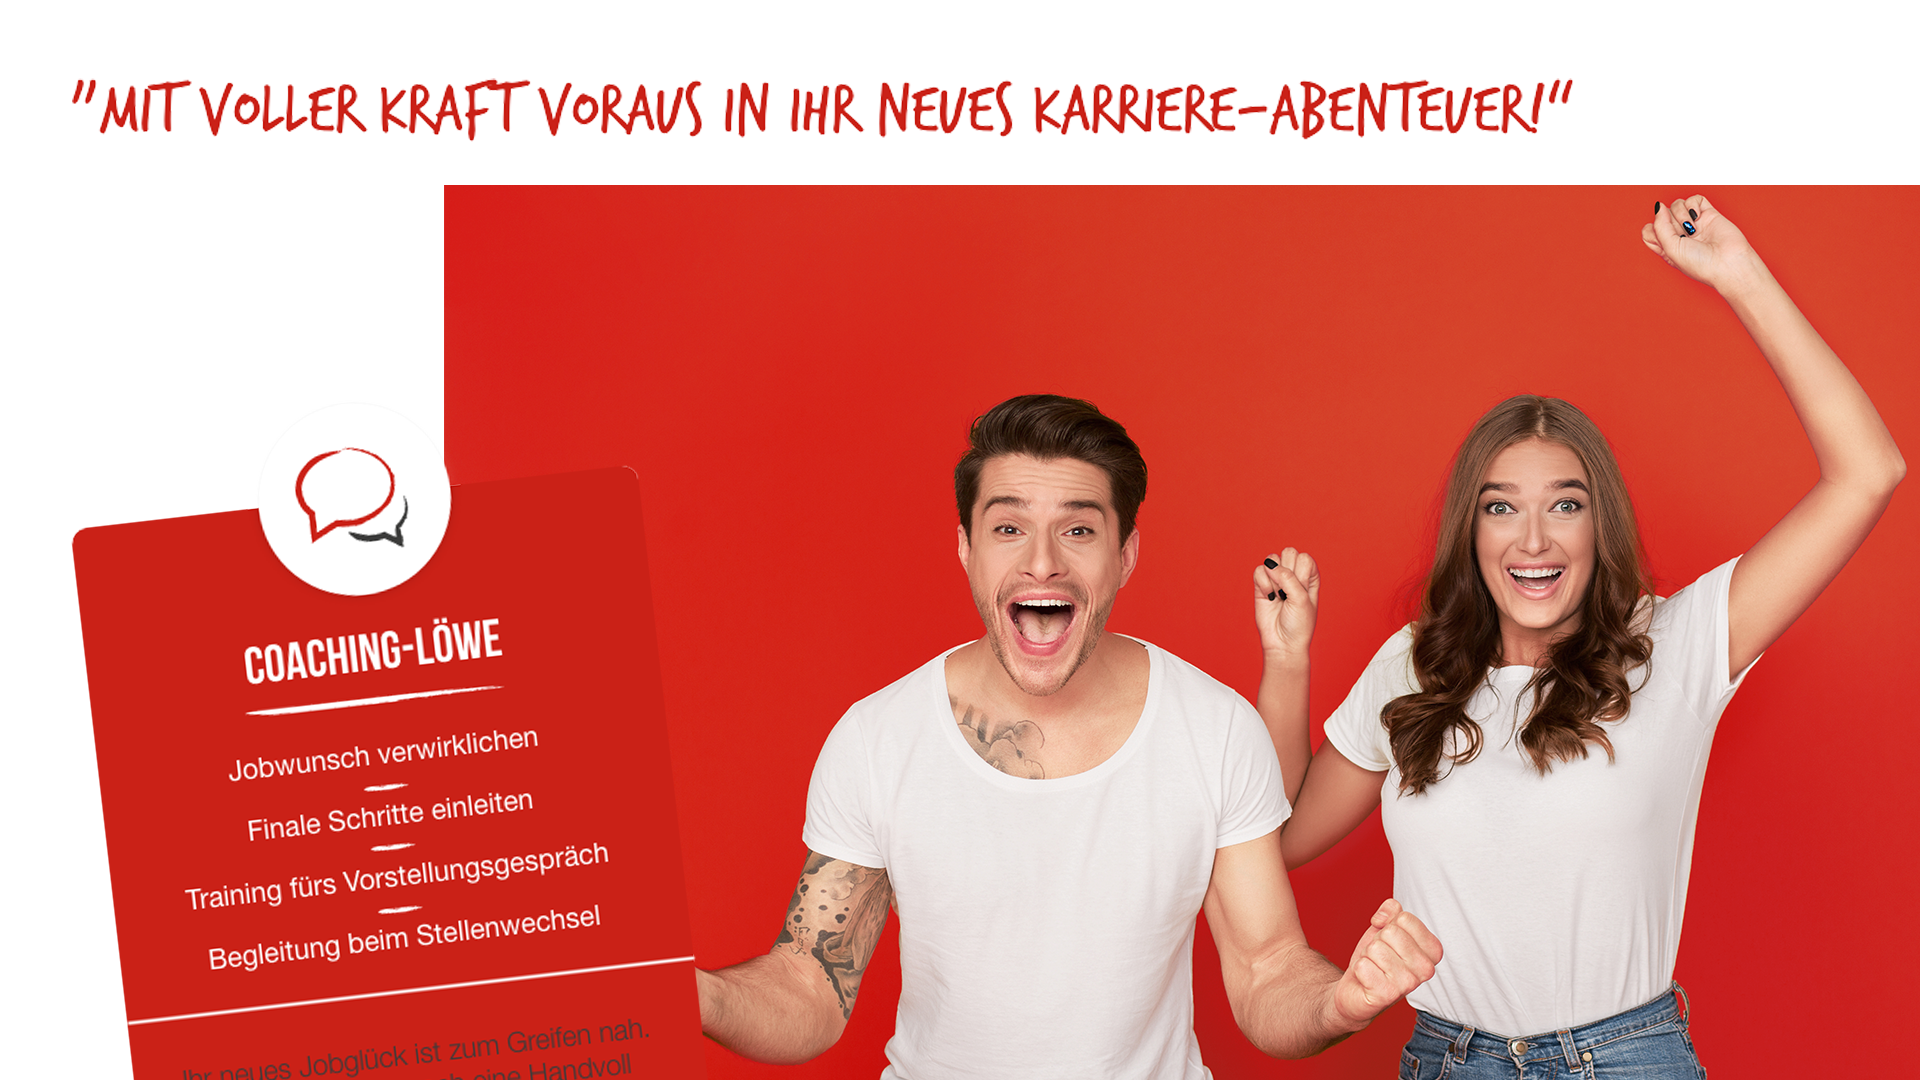 Scribble Werbeagentur nah bei Aachen zeigt ein Paar, das mit voller Kraft In ein neues Karriere-Abenteuer startet.